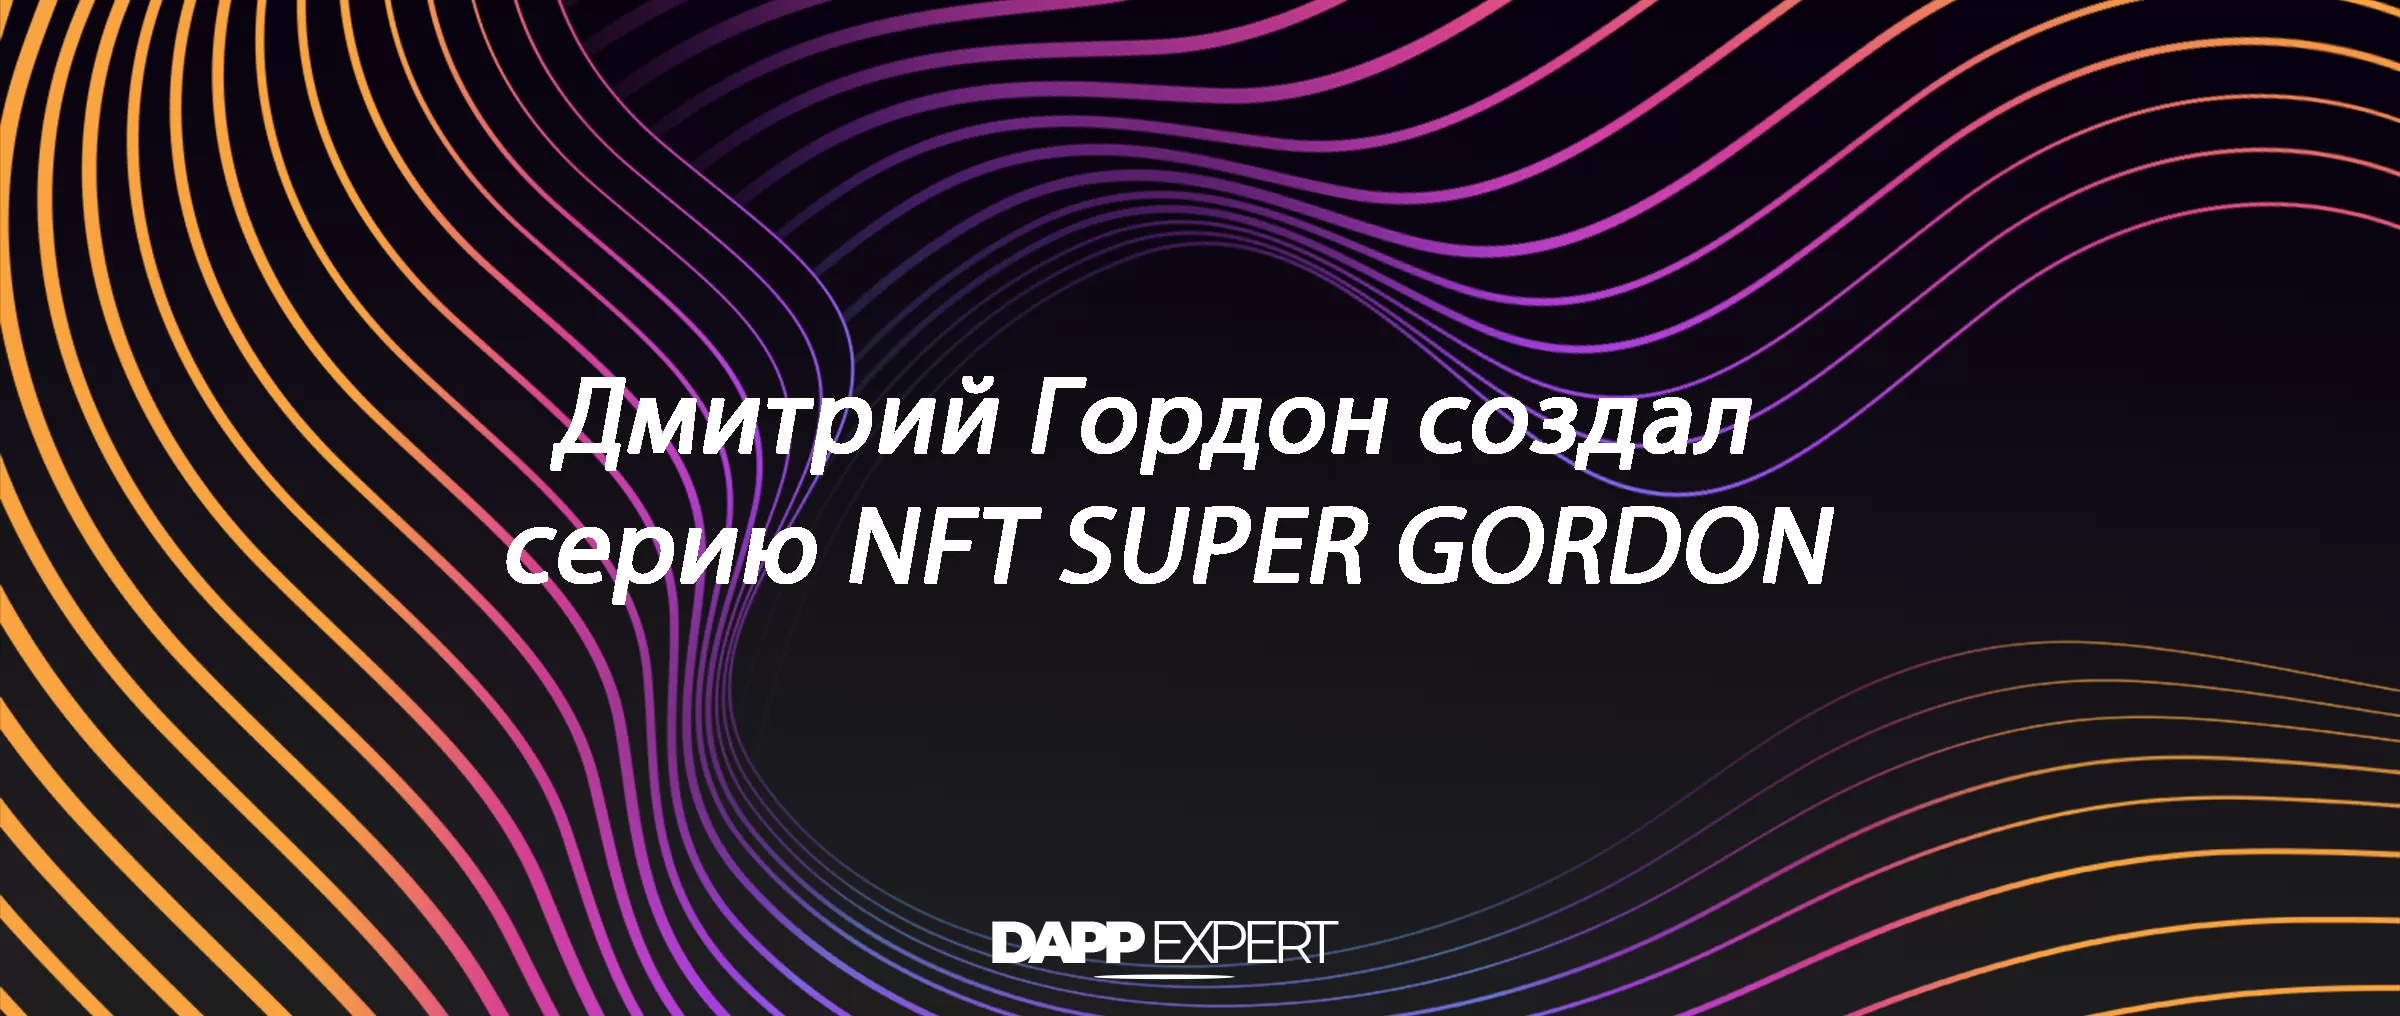 Дмитрий Гордон создал серию NFT SUPER GORDON